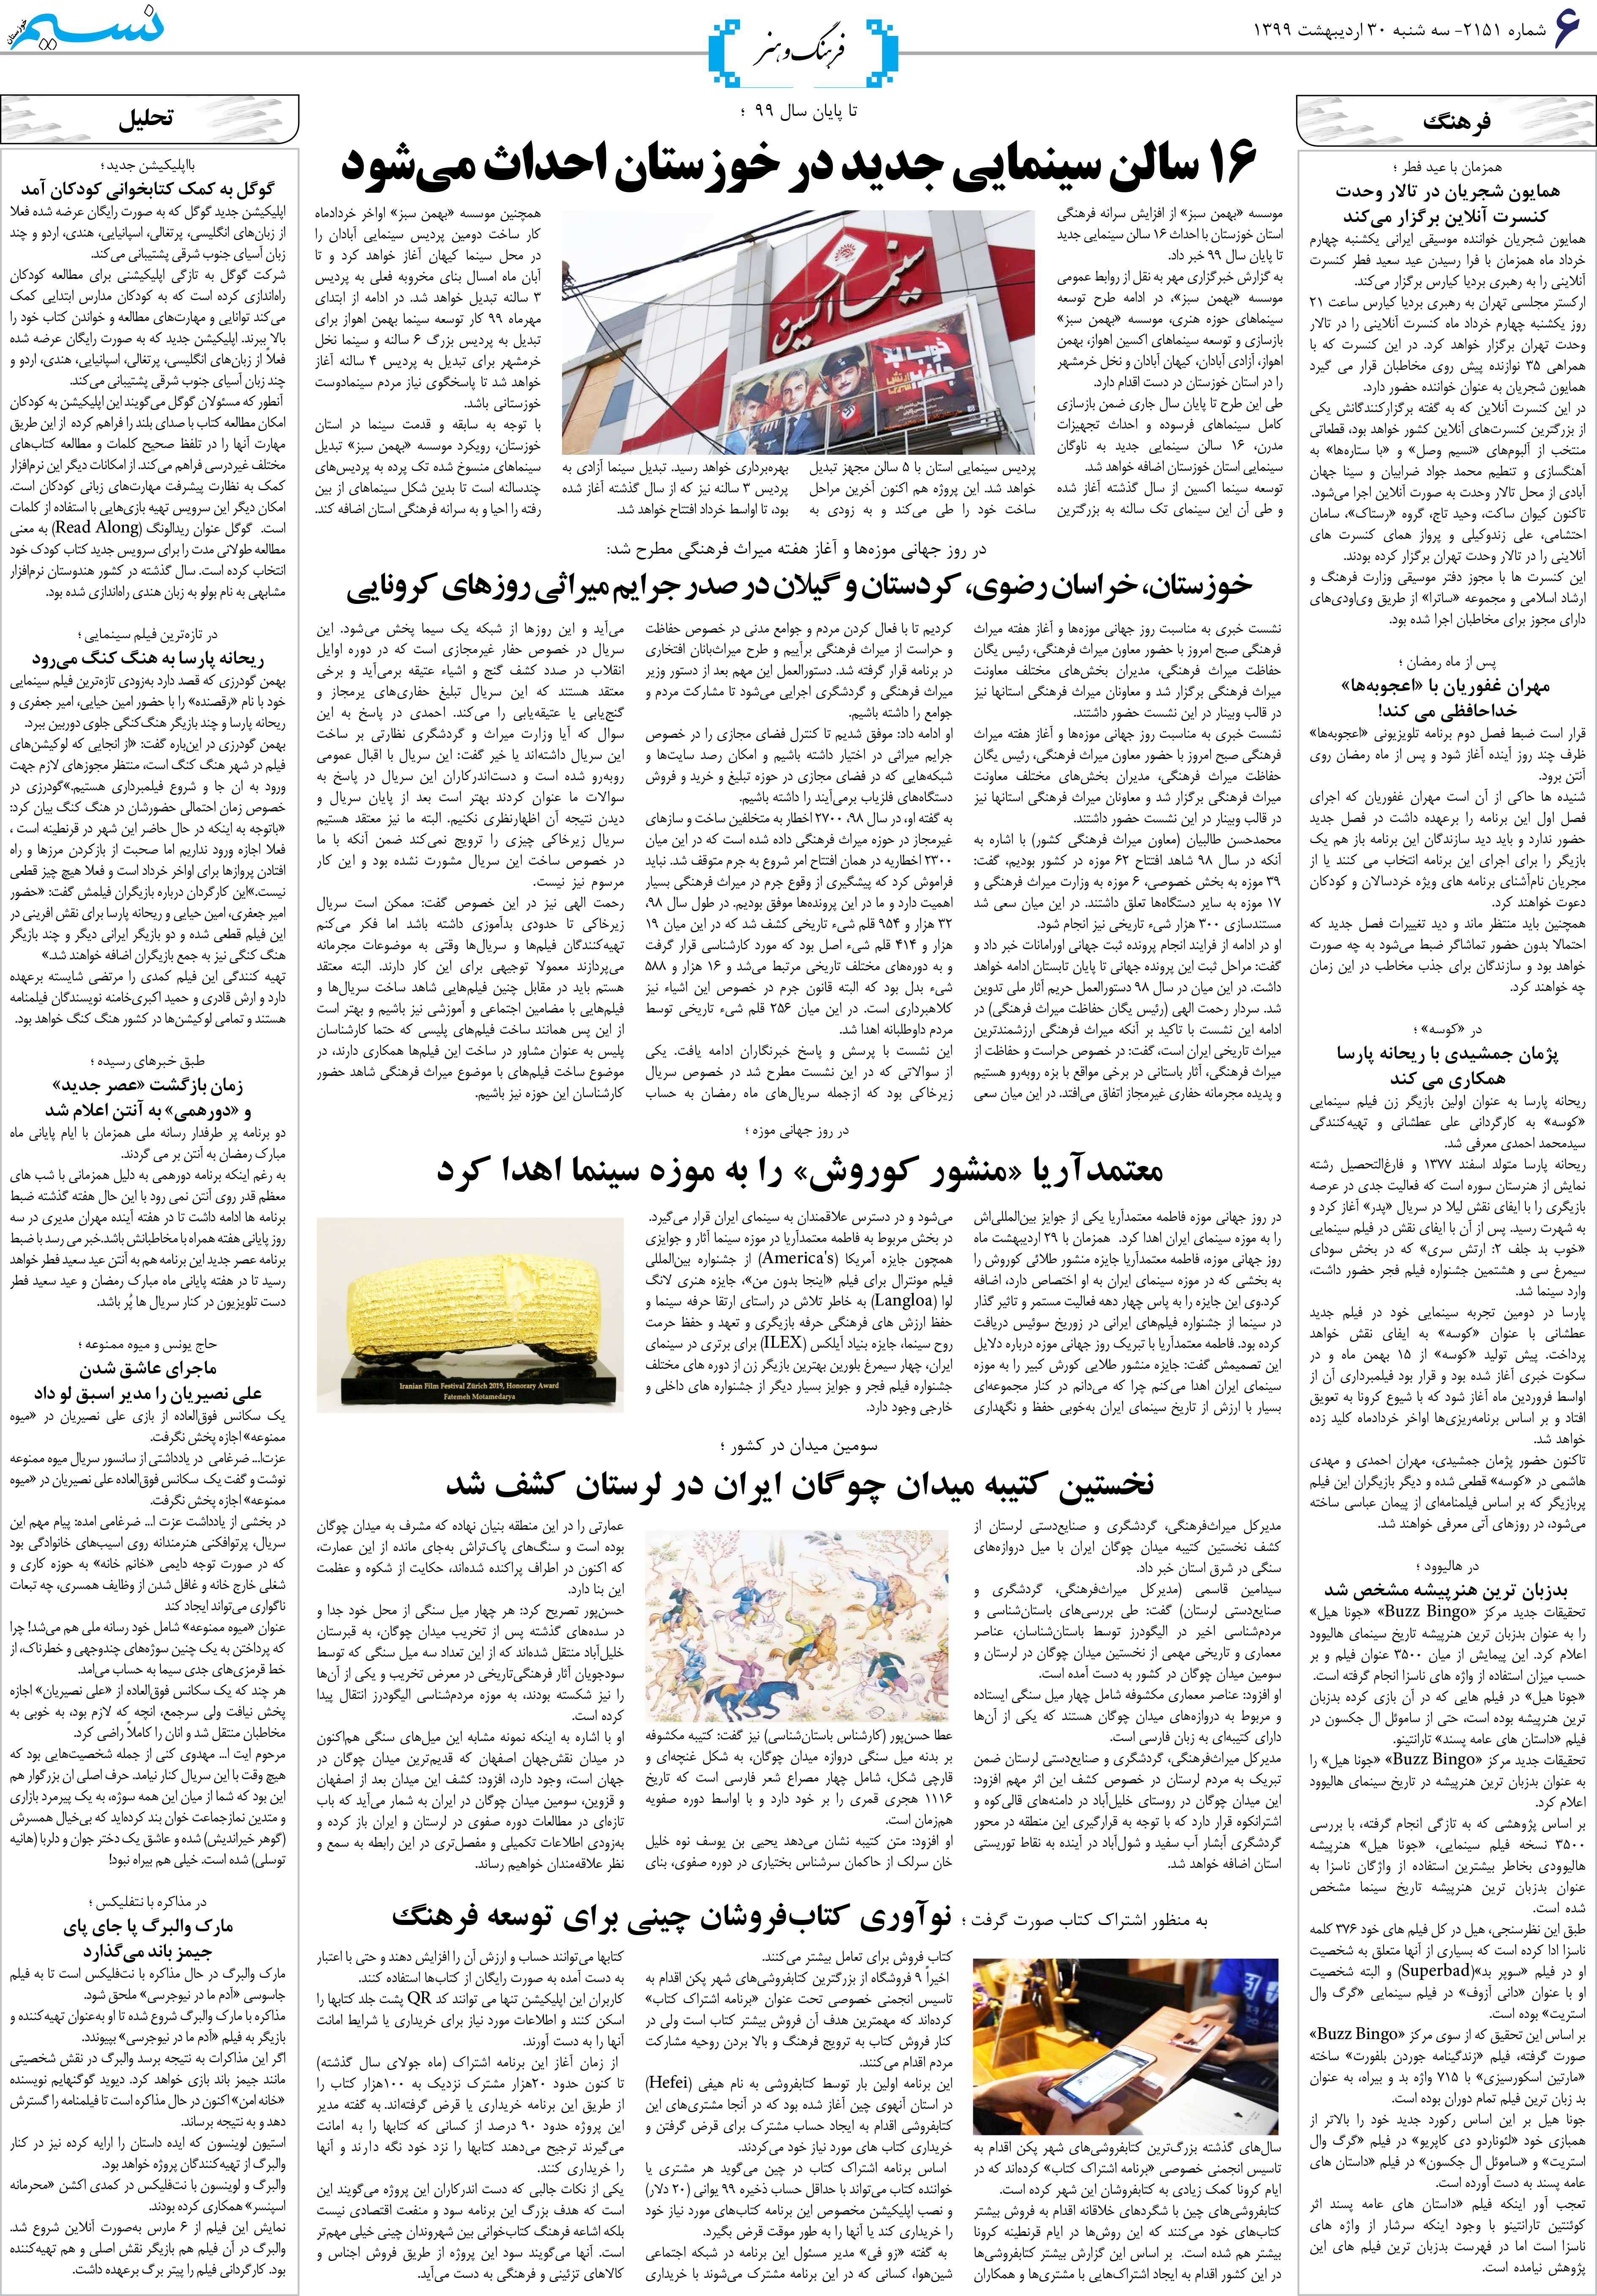 صفحه فرهنگ و هنر روزنامه نسیم شماره 2151